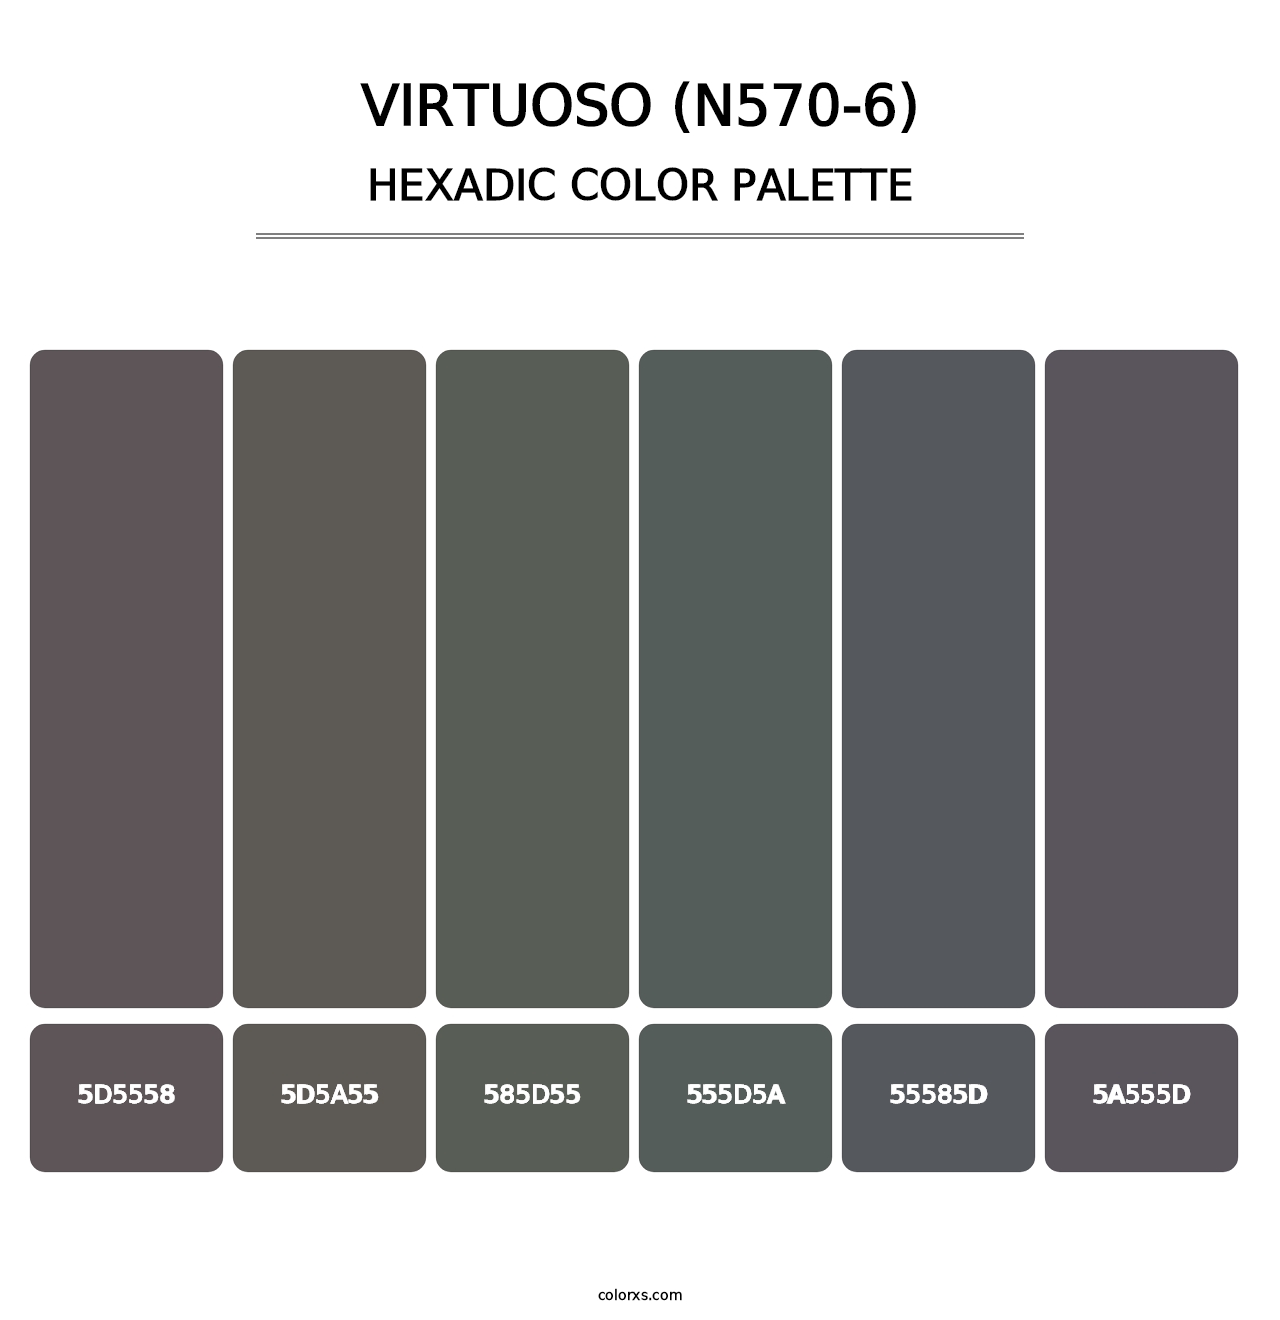 Virtuoso (N570-6) - Hexadic Color Palette